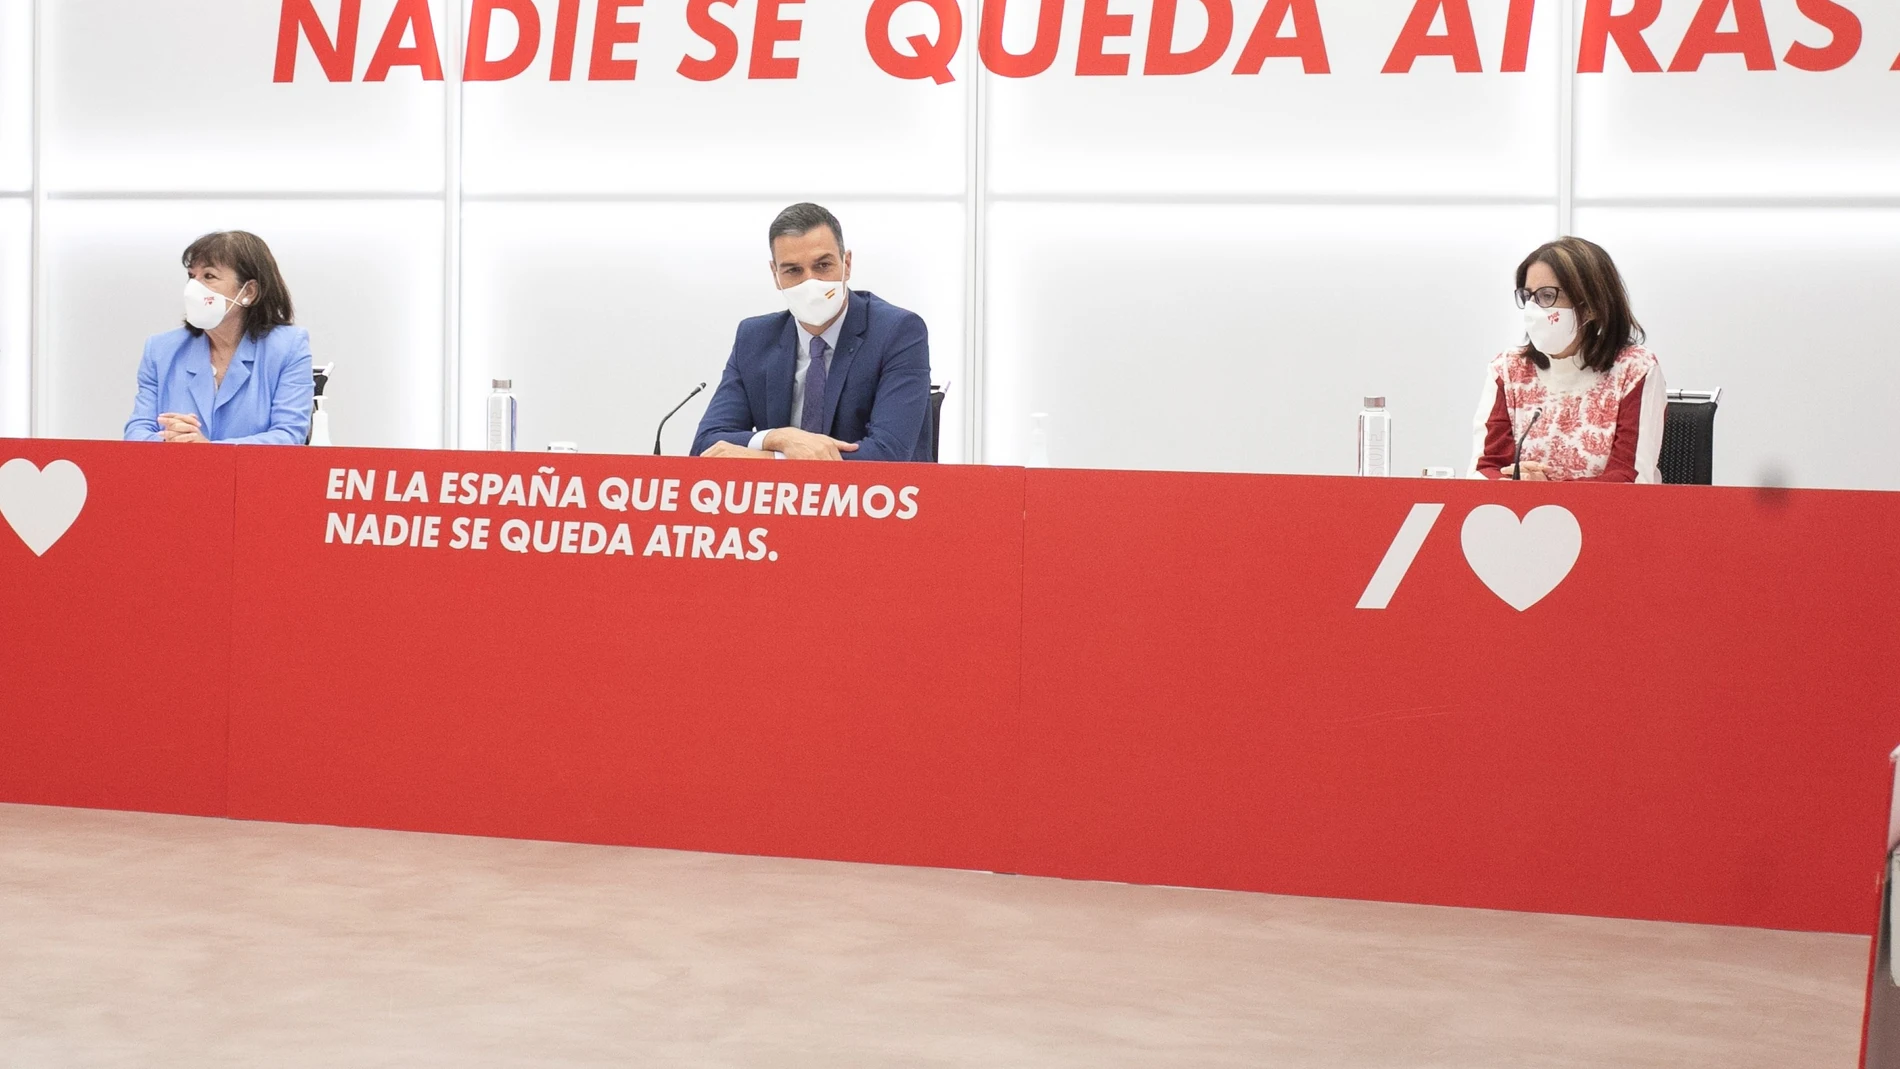 El secretario general del PSOE, Pedro Sánchez, junto a la presidenta, Cristina Narbona (izquierda) en una reunión ejecutiva del PSOE